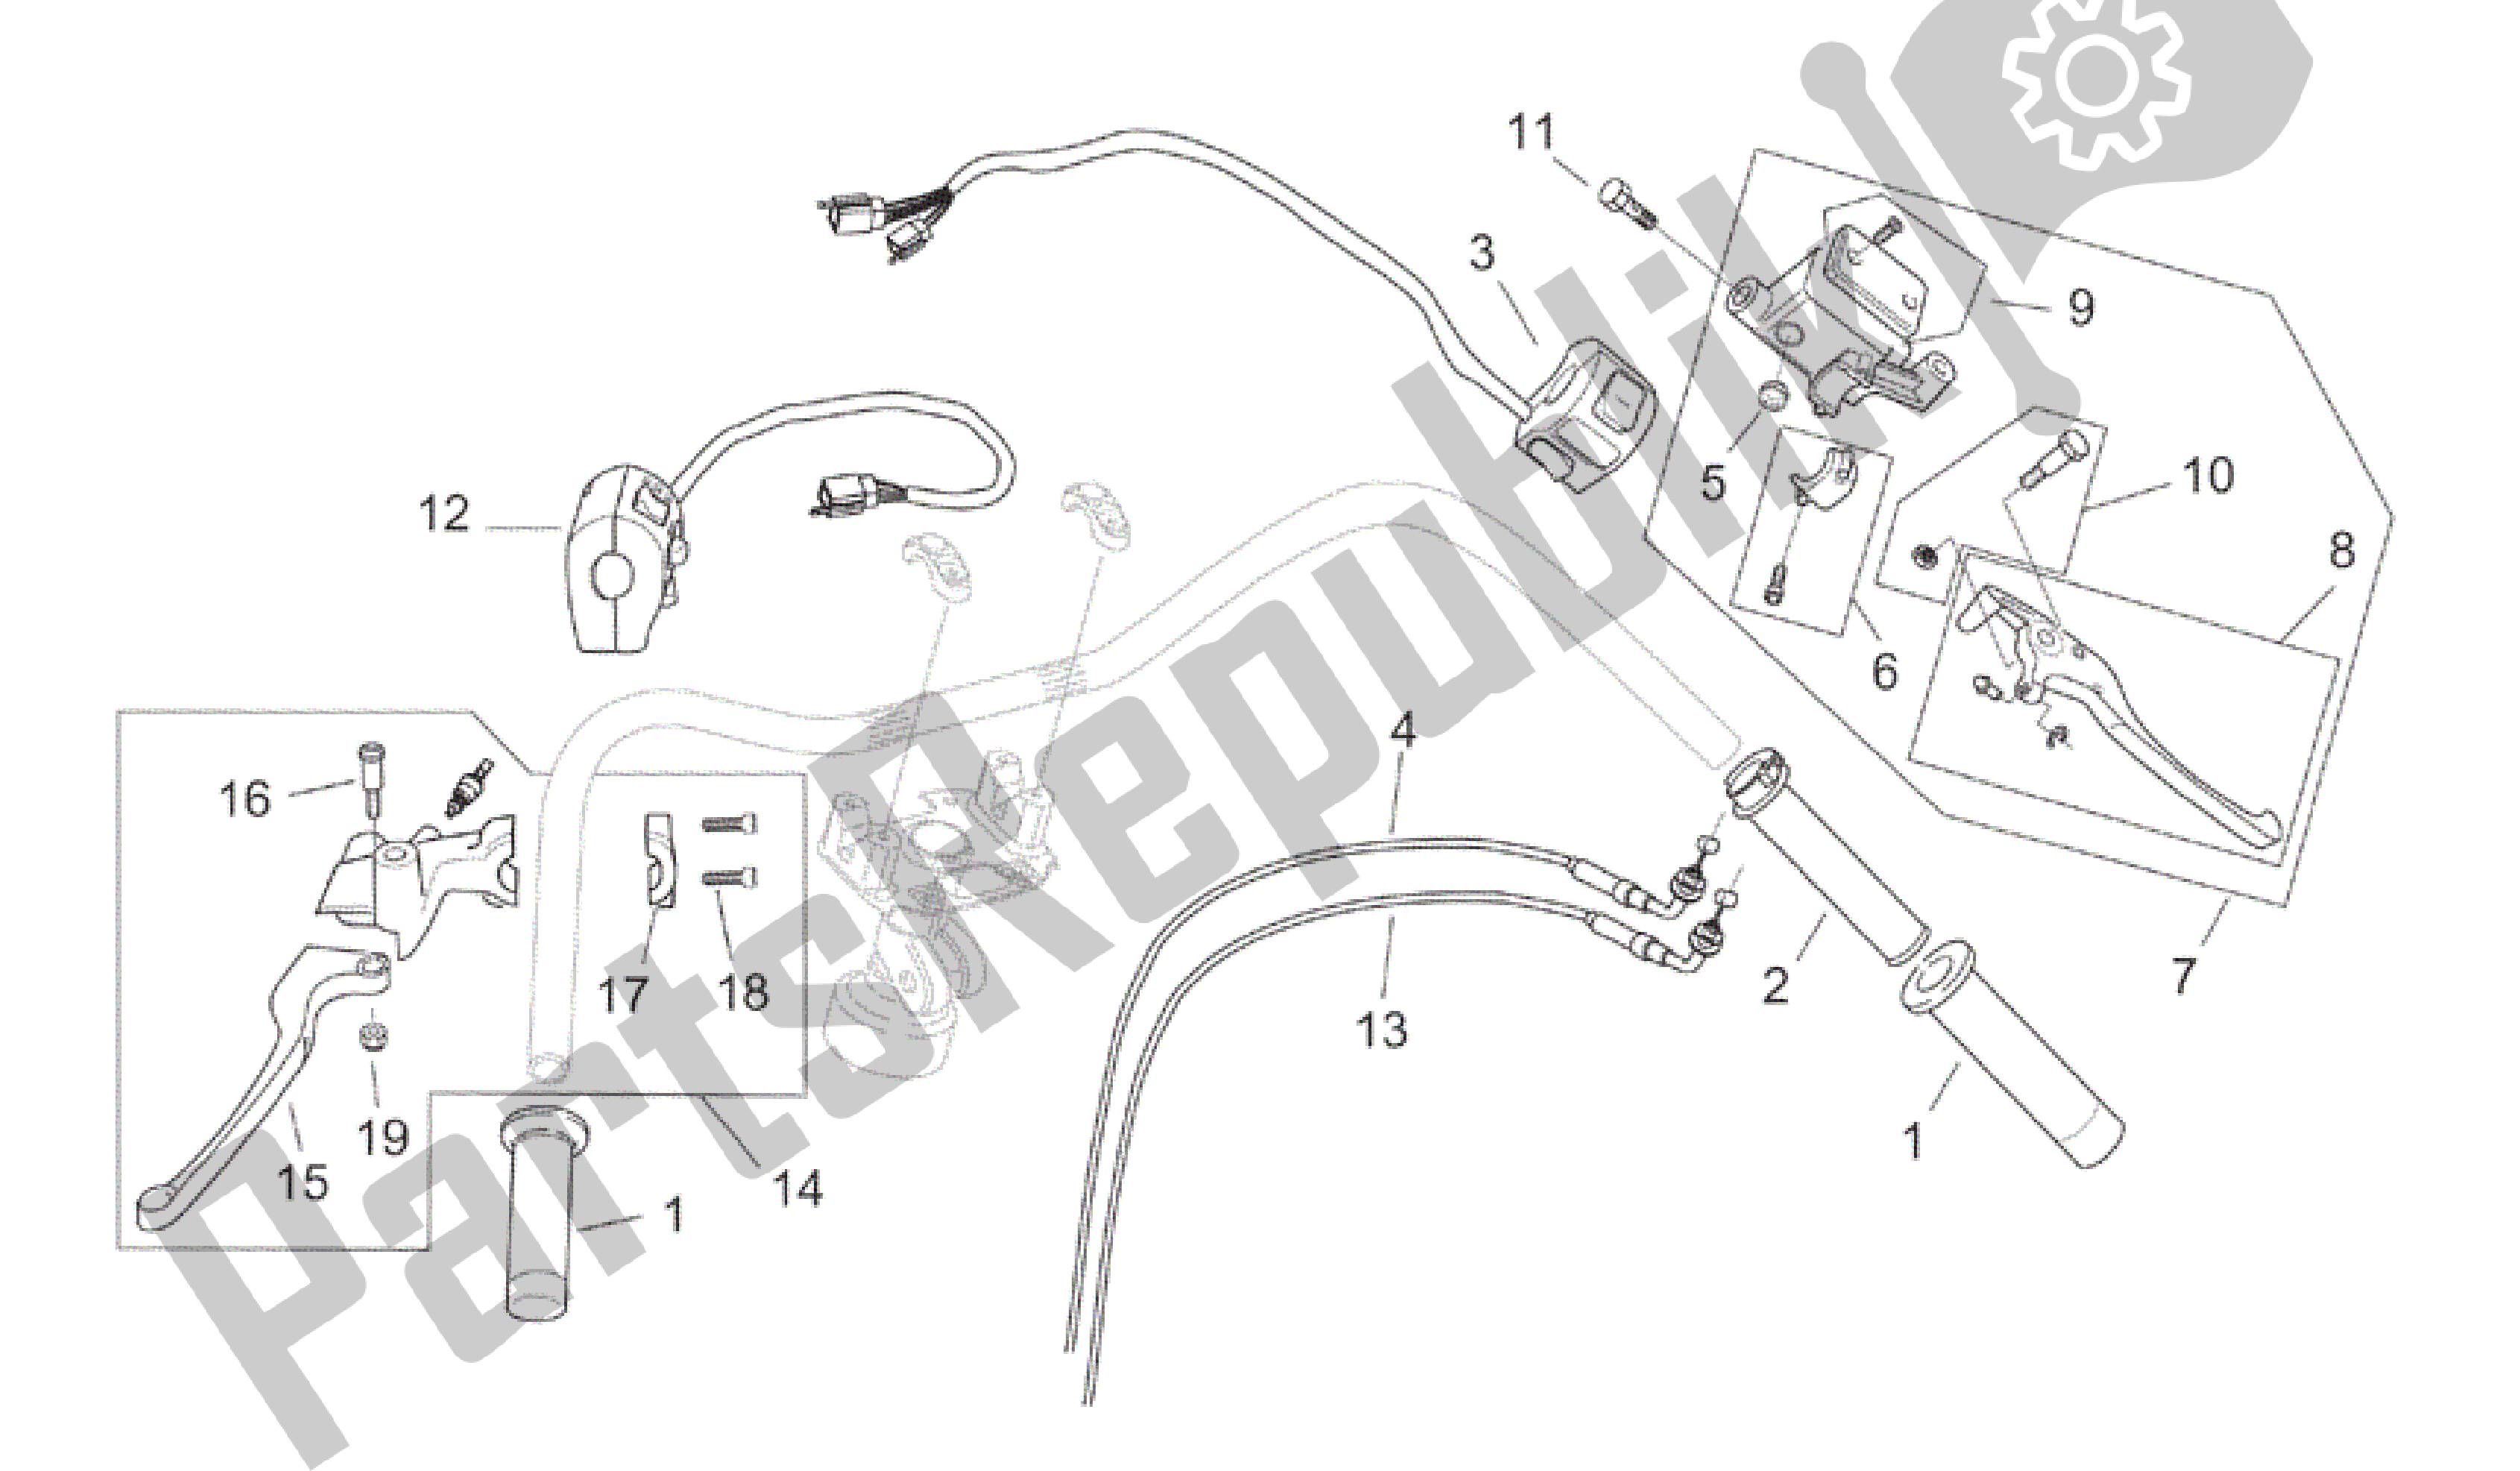 All parts for the Controls - Custom of the Aprilia Mojito 125 2003 - 2007